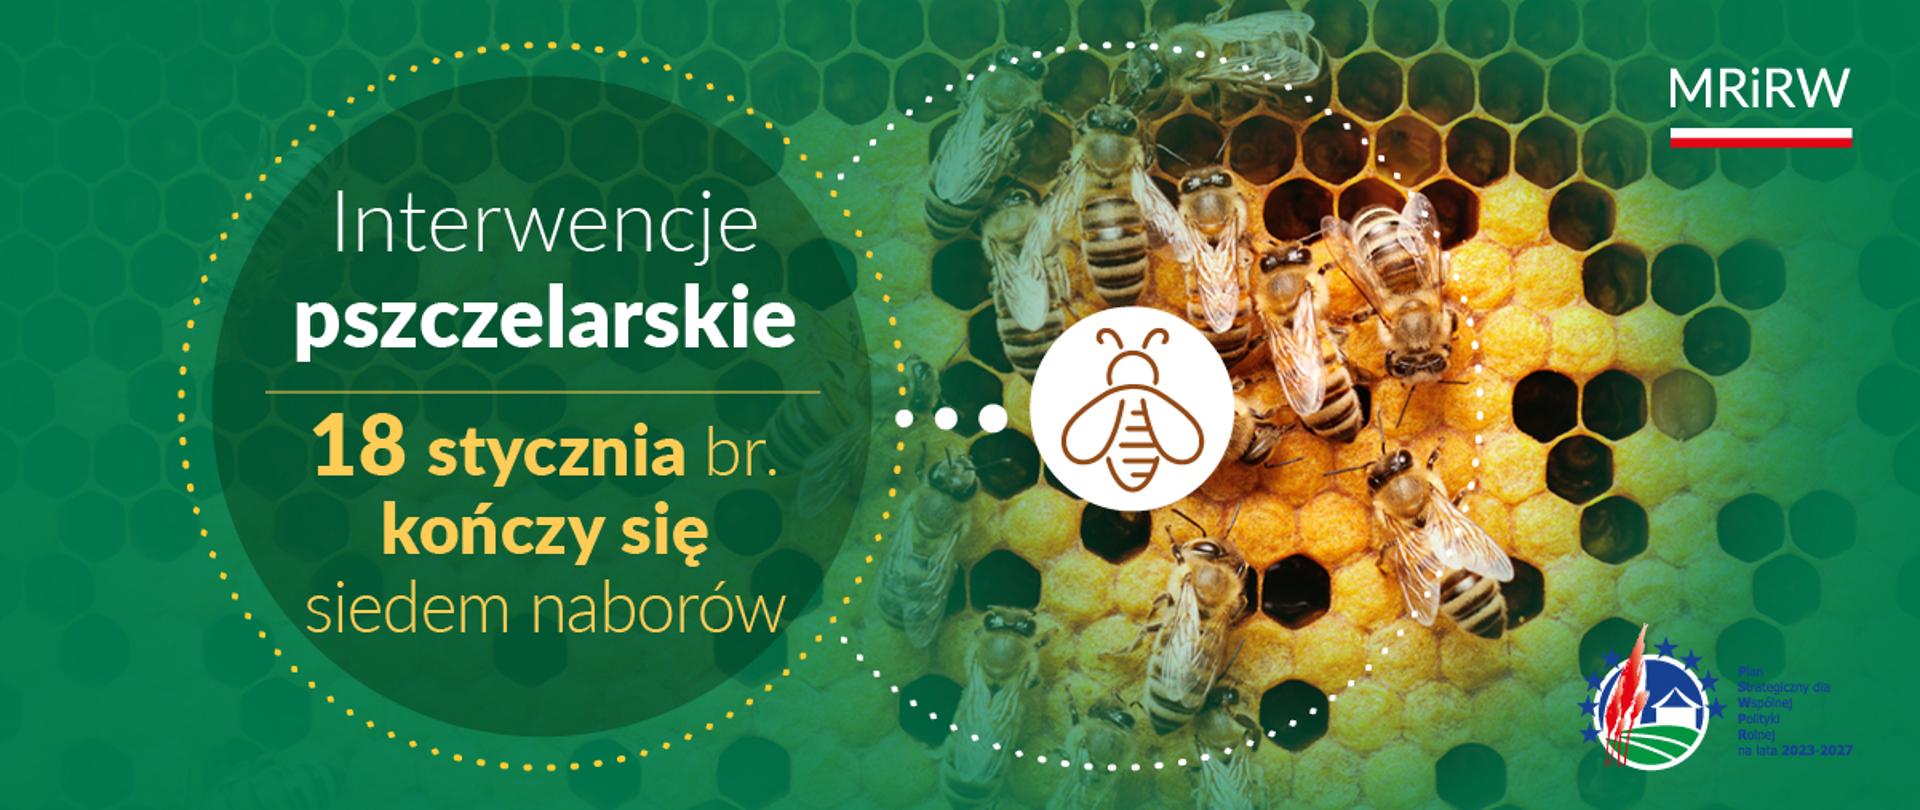 Interwencje pszczelarskie - 18 stycznia kończy się siedem naborów